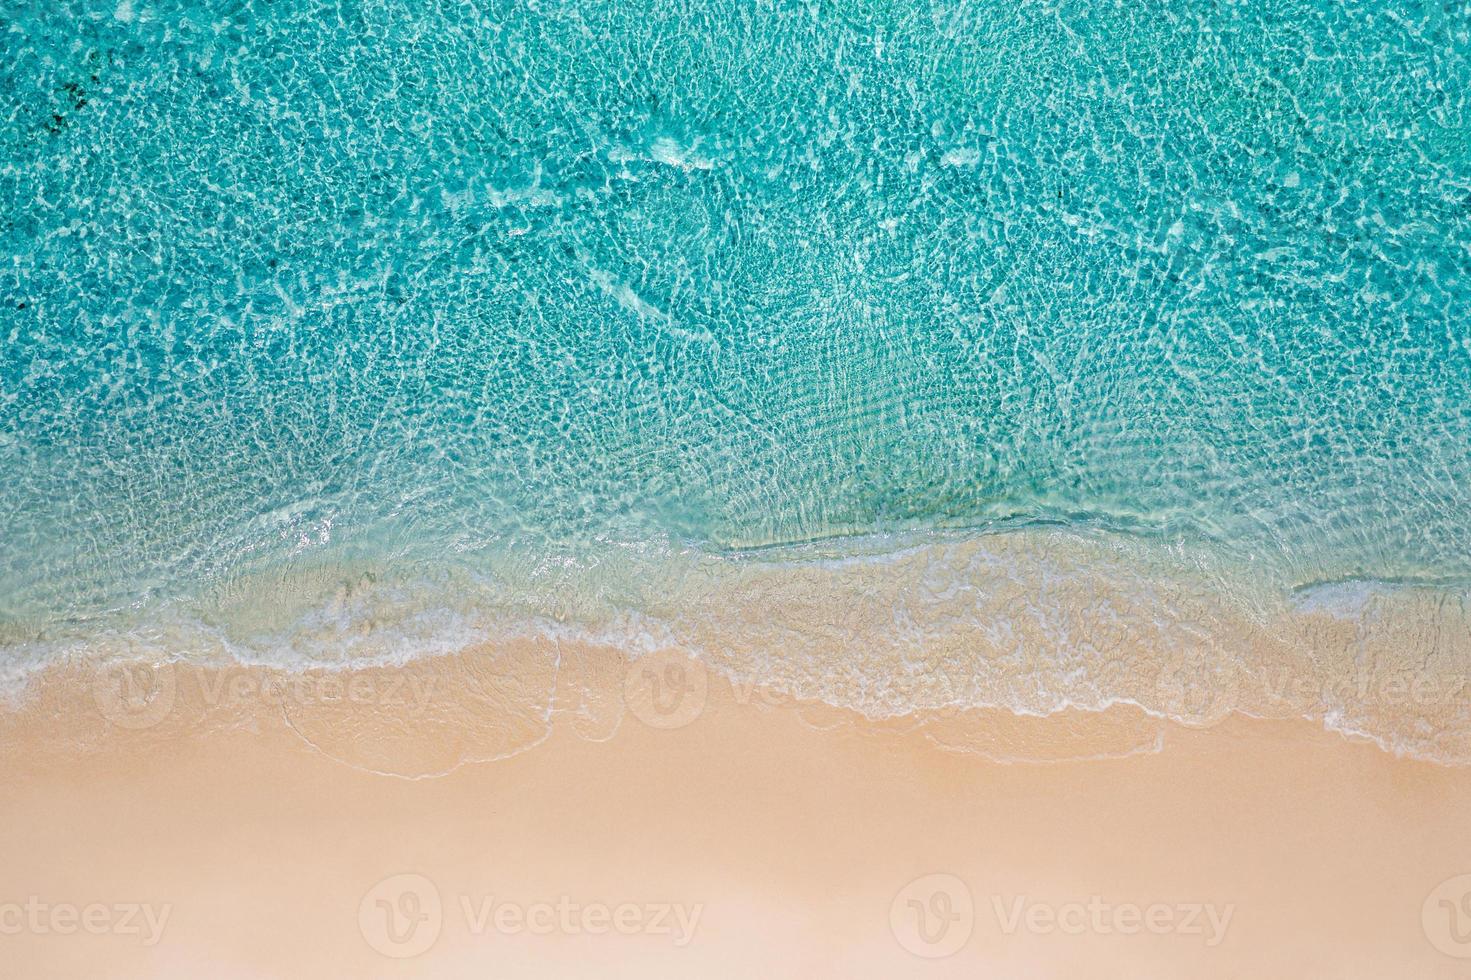 entspannender luftstrand, sommerferien tropische mediterrane landschaftsbanner. wellen surfen erstaunliche blaue ozeanlagune, küstenlinie des meeres. schöne luftdrohnendraufsicht. friedlicher Strand, Brandung am Meer foto